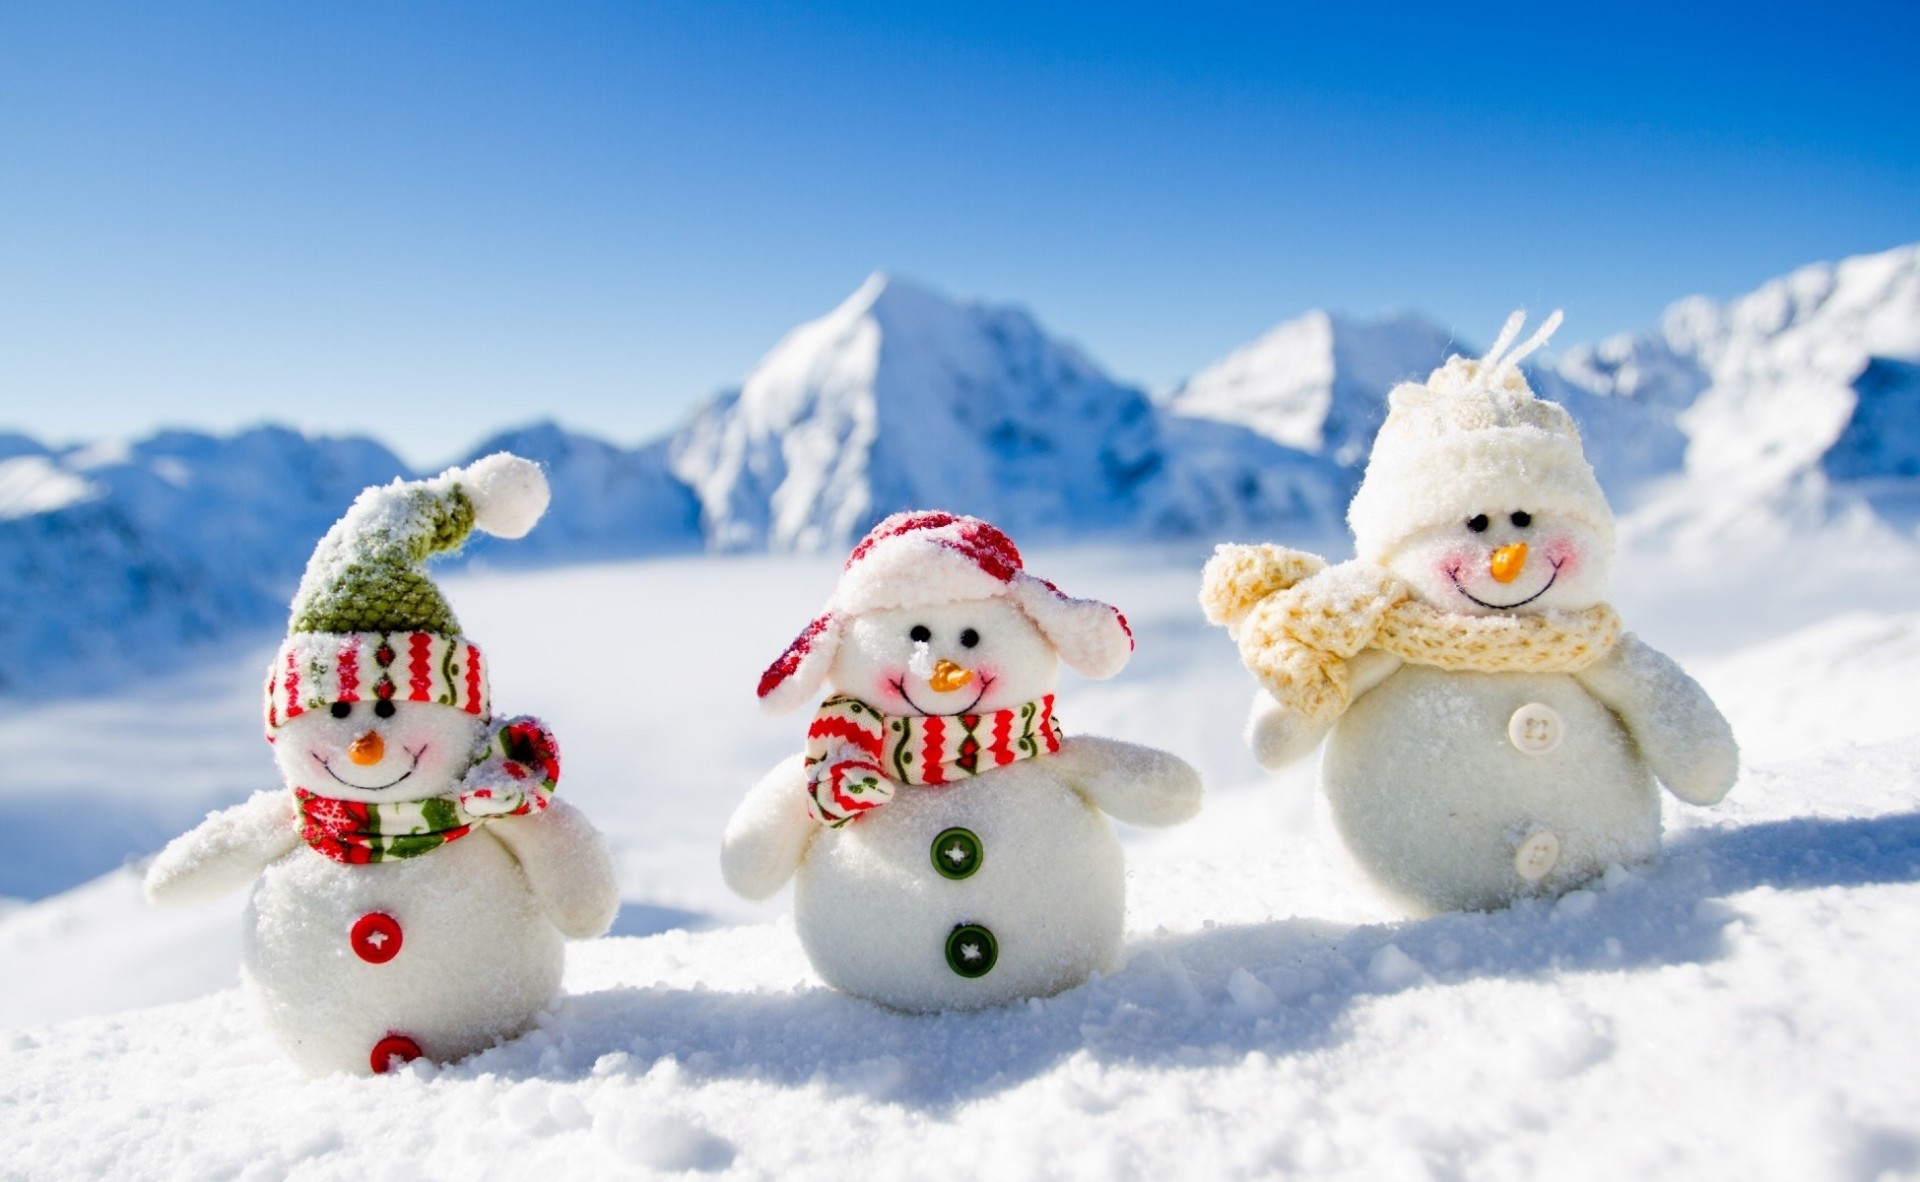 яркие краски снег зима снеговик холодная рождество мороз удовольствие сезон снежок лед замороженные традиционные морозный на открытом воздухе отдых праздник отпуск